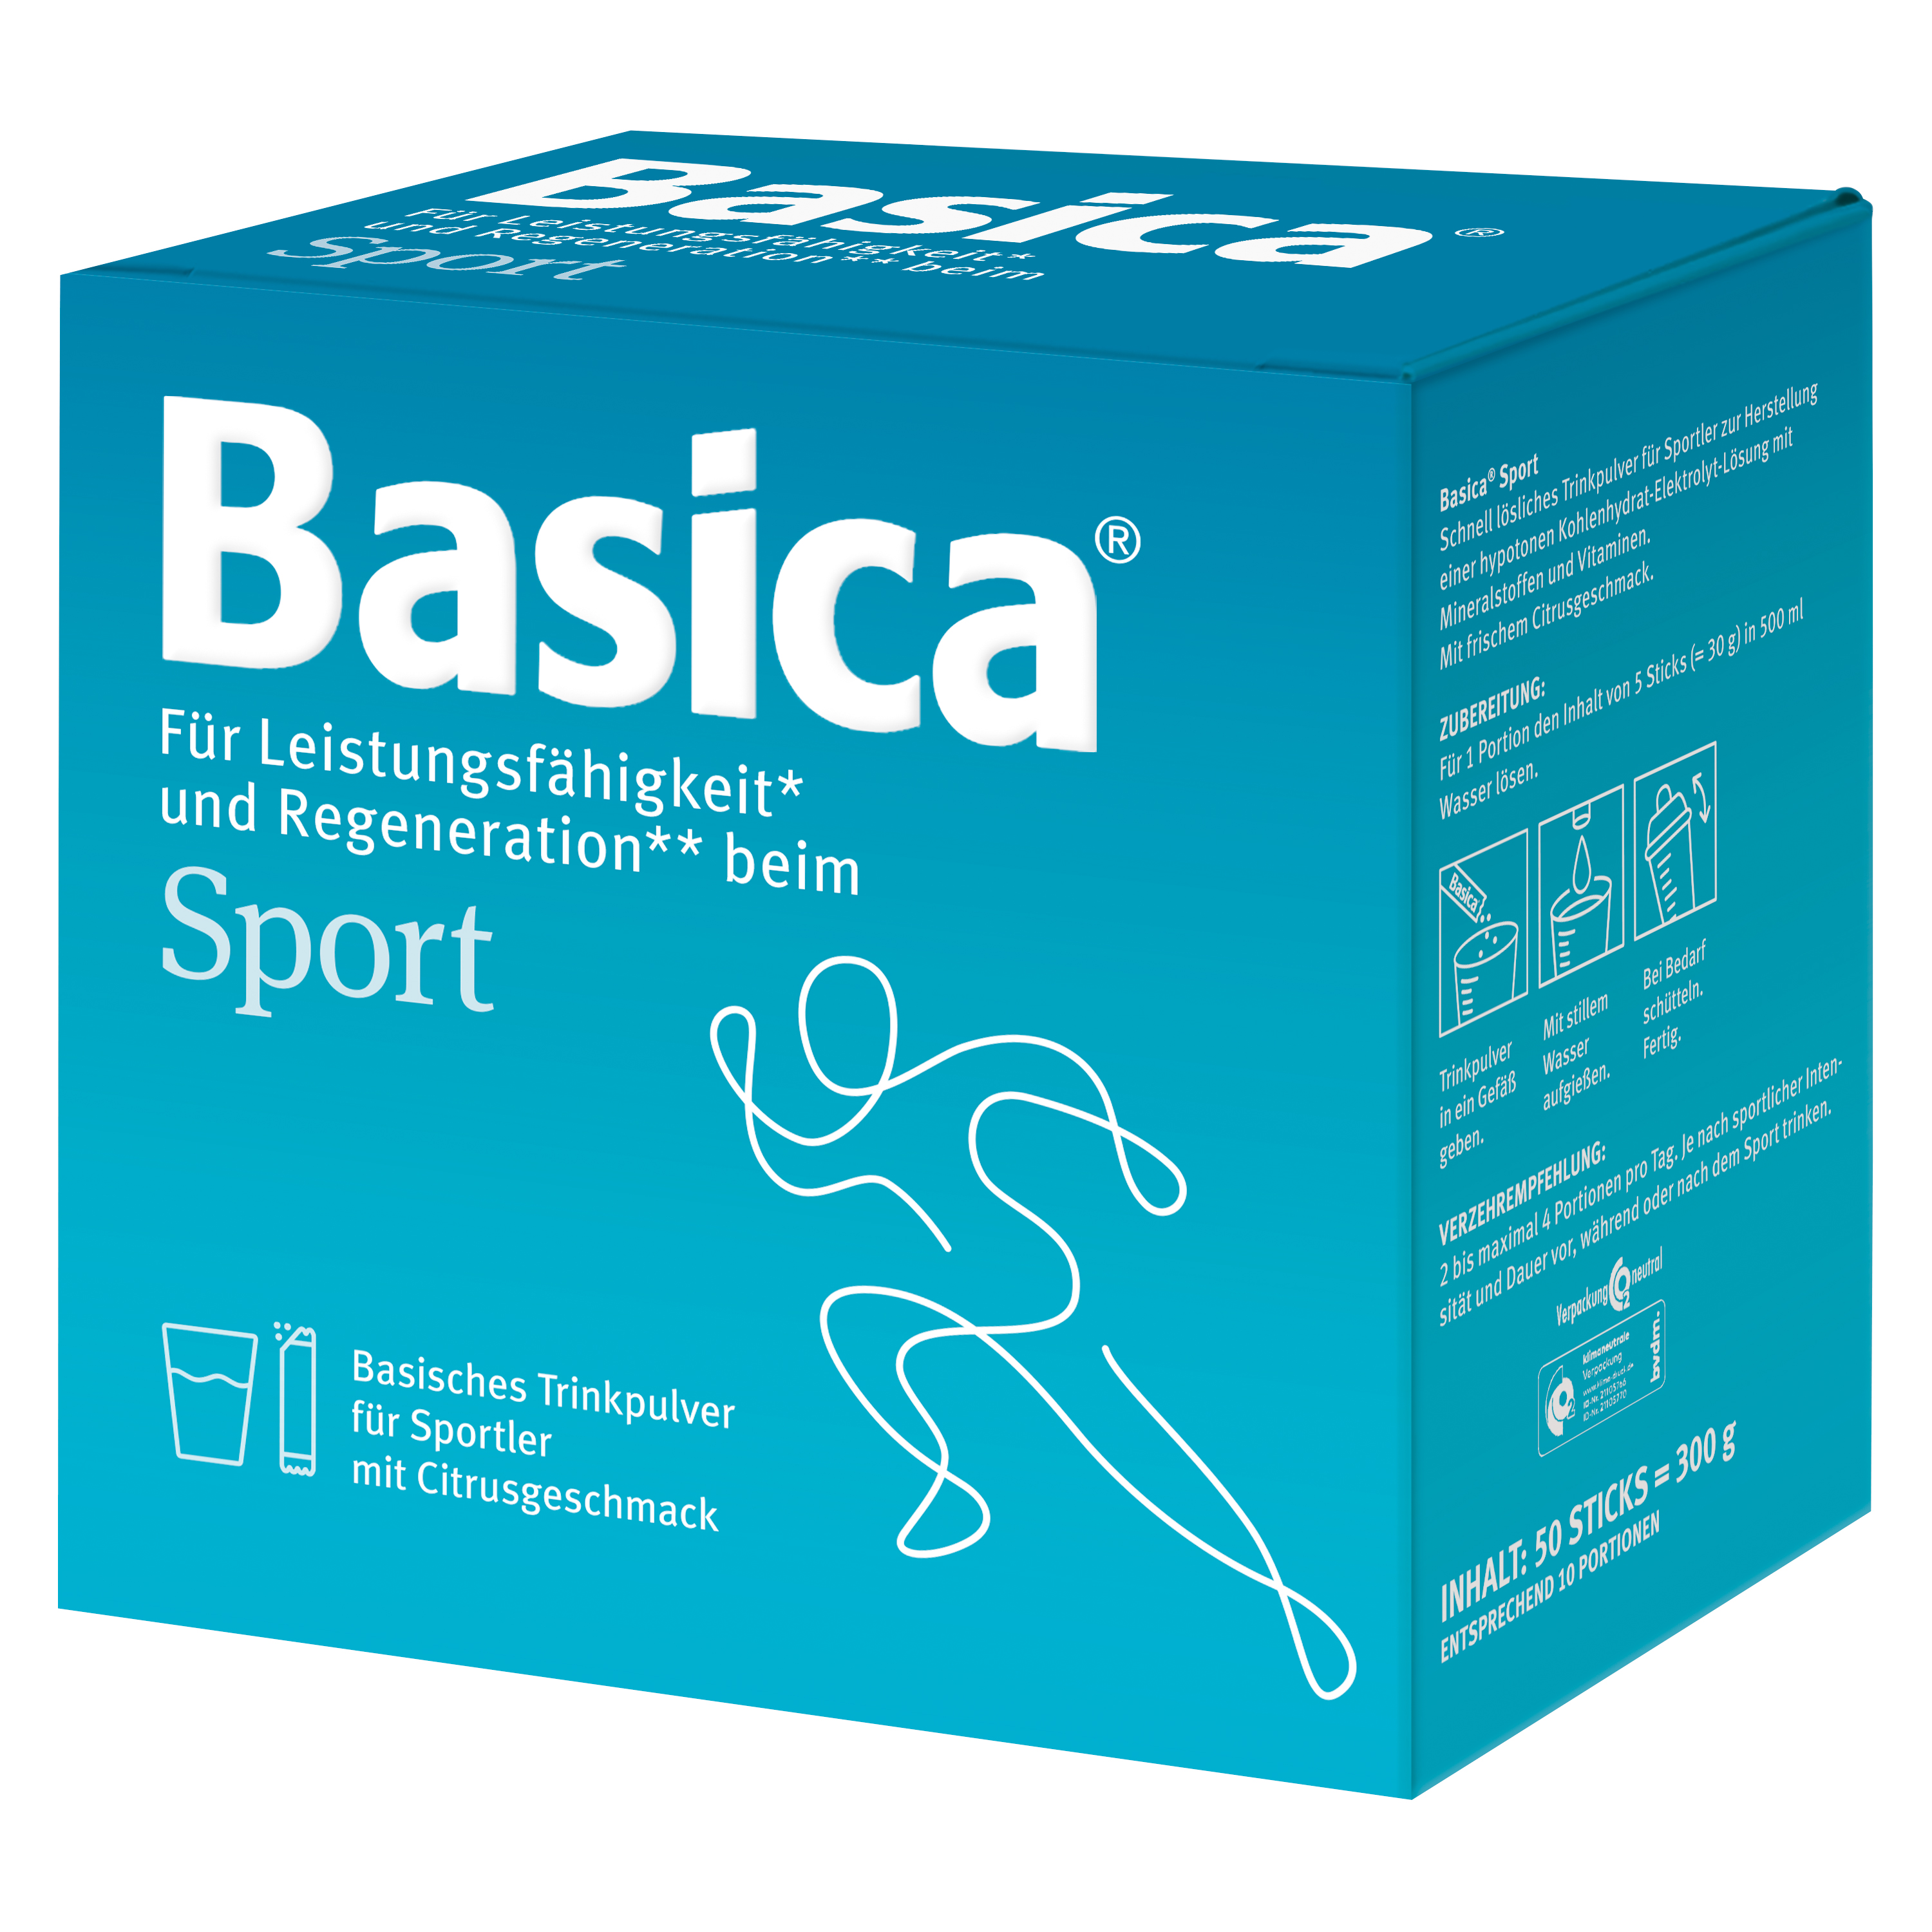 Basica® Sport, Basisches Trinkpulver für Sportler